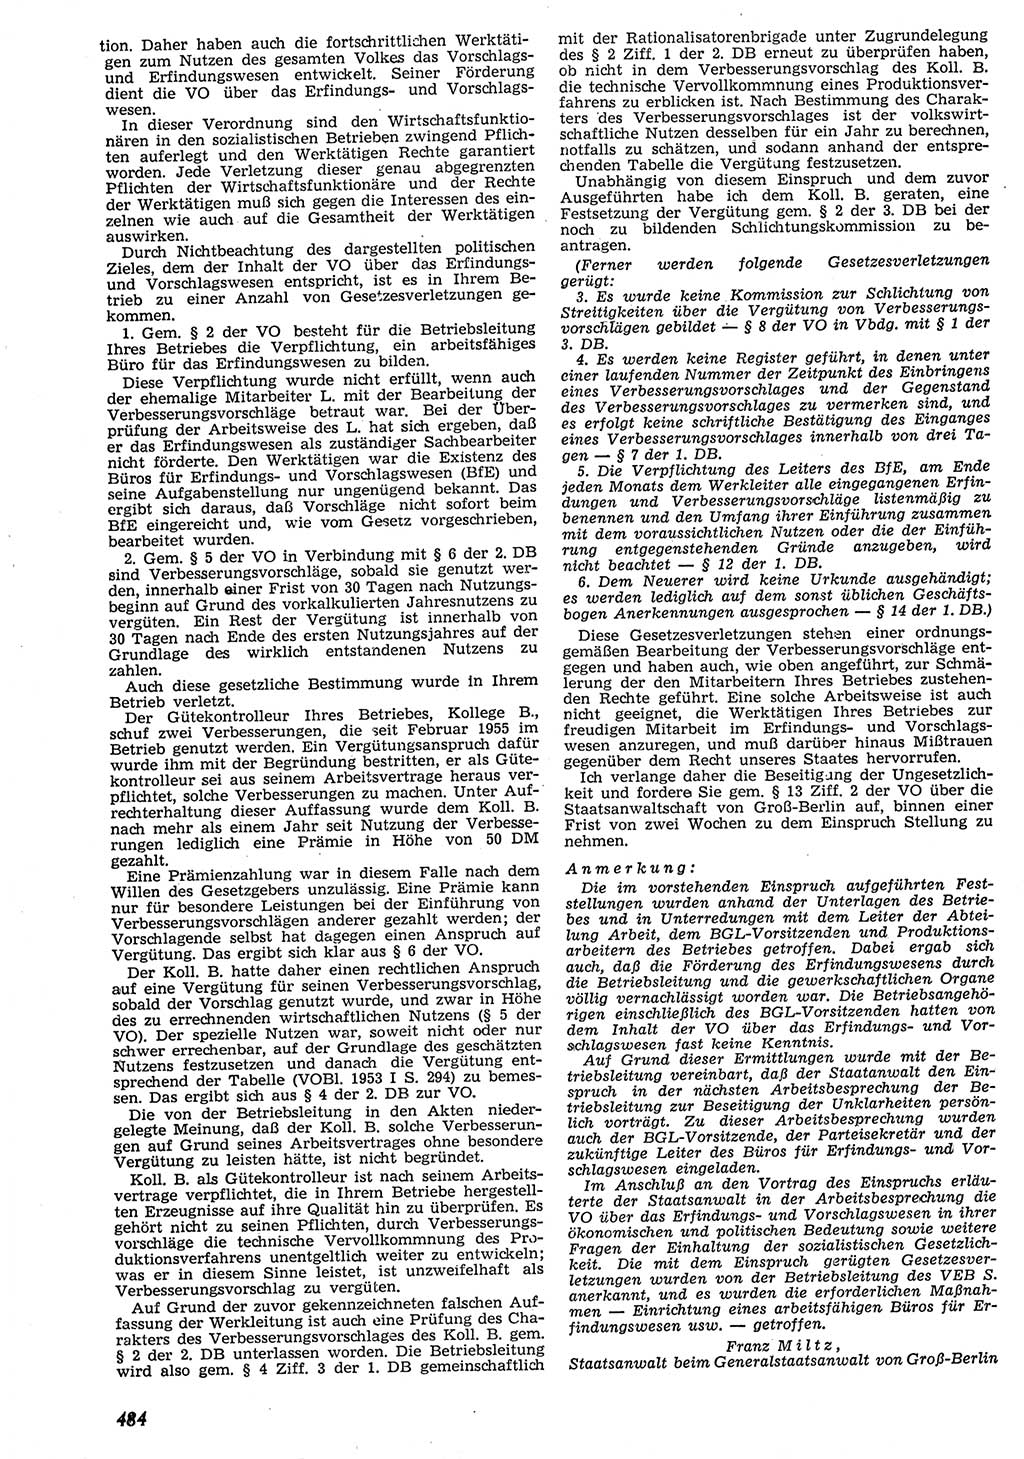 Neue Justiz (NJ), Zeitschrift für Recht und Rechtswissenschaft [Deutsche Demokratische Republik (DDR)], 10. Jahrgang 1956, Seite 484 (NJ DDR 1956, S. 484)